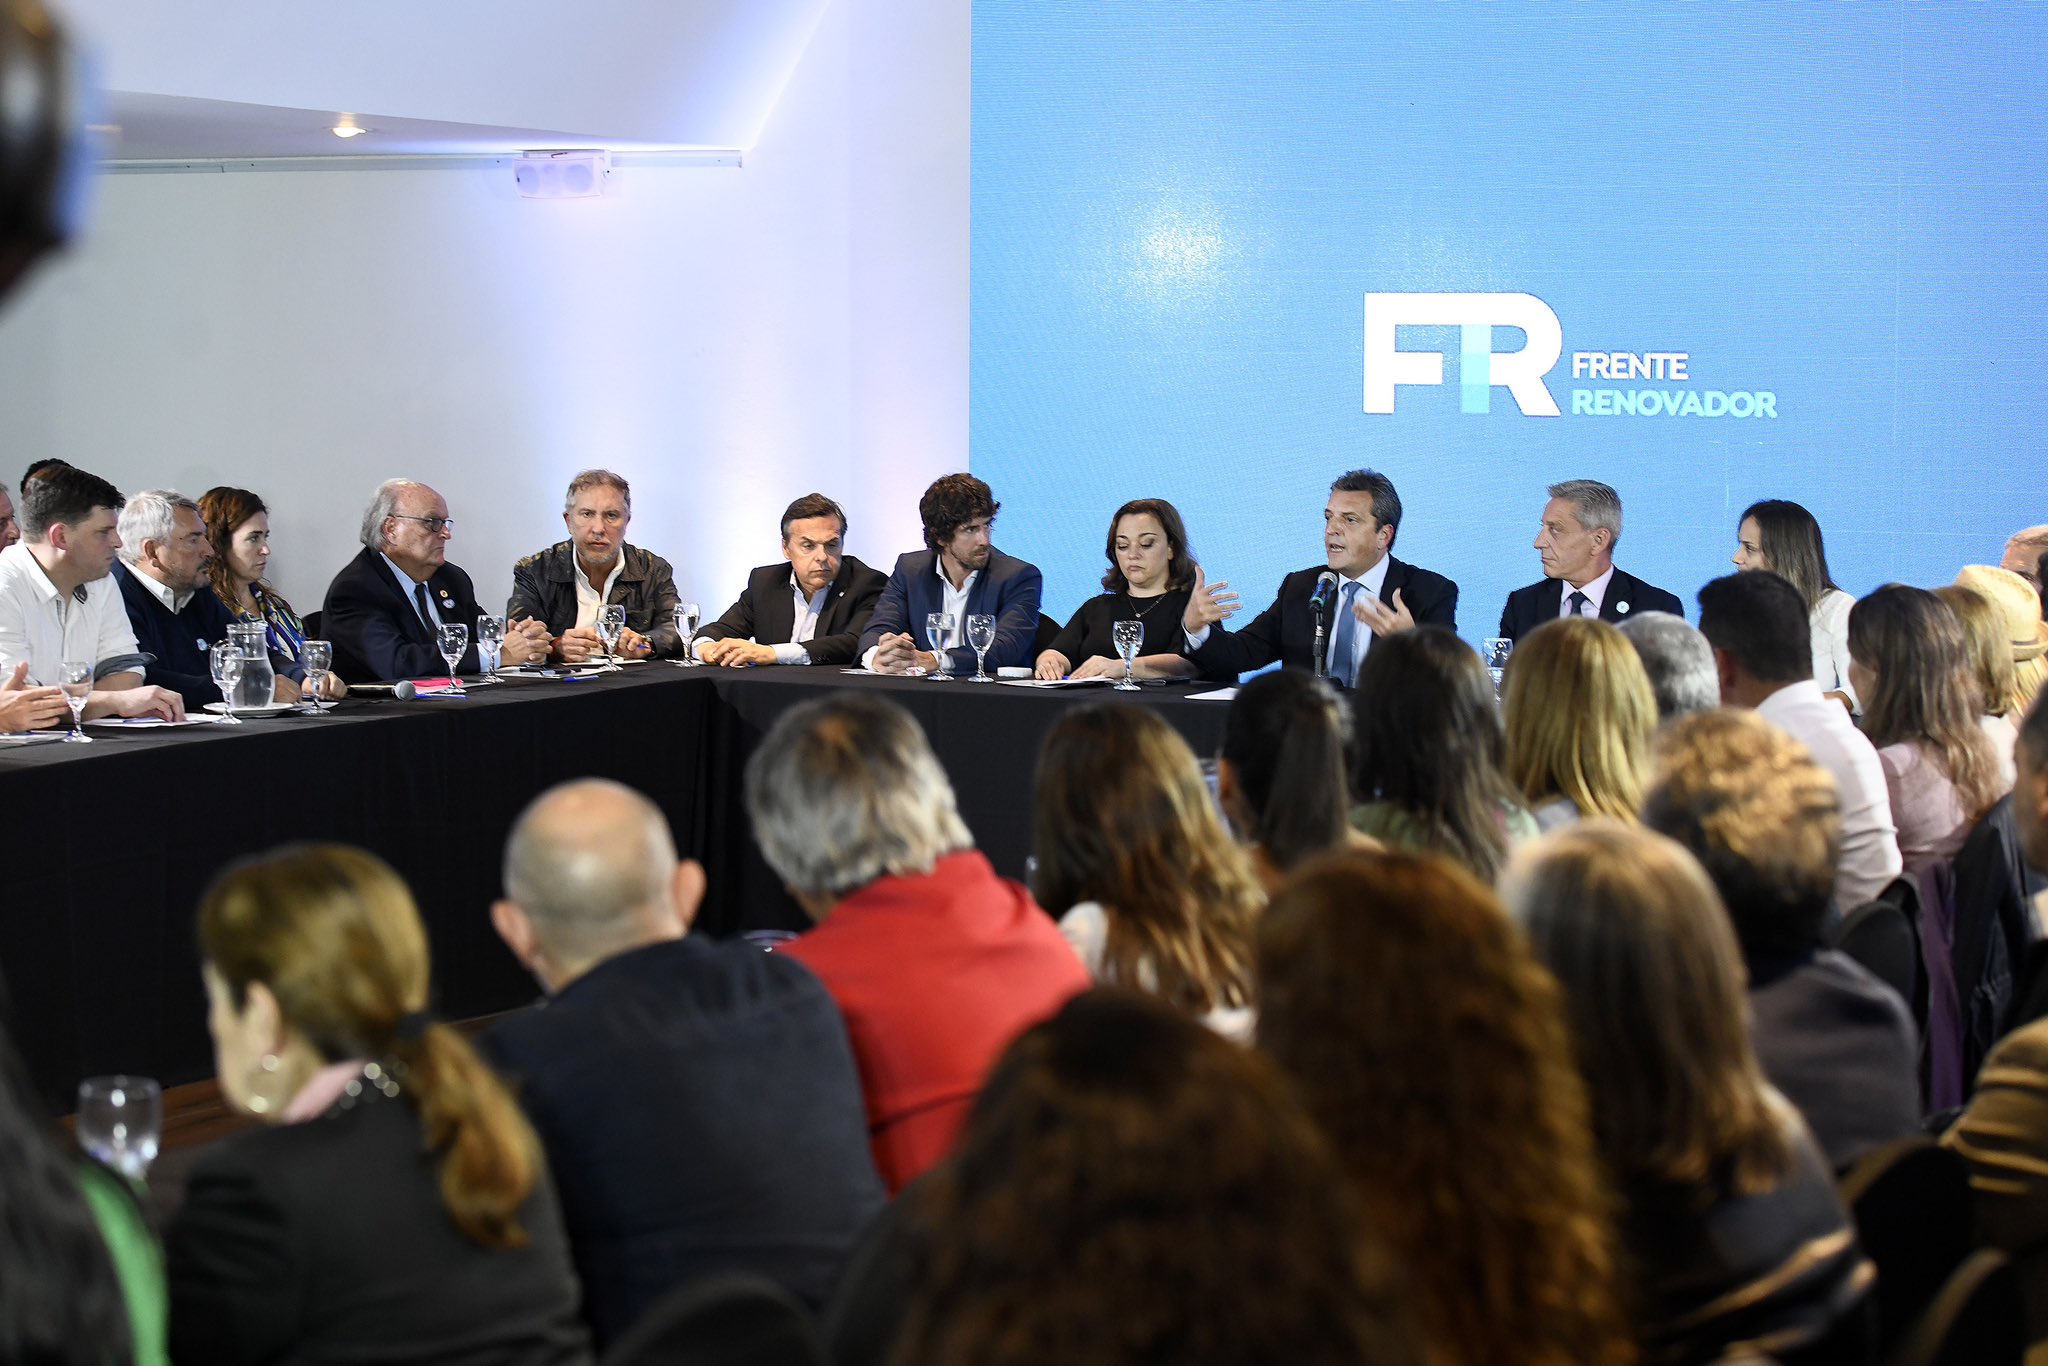 El Frente Renovador le pidió a Alberto Fernández que convoque a discutir el proyecto y la estrategia electoral del espacio político